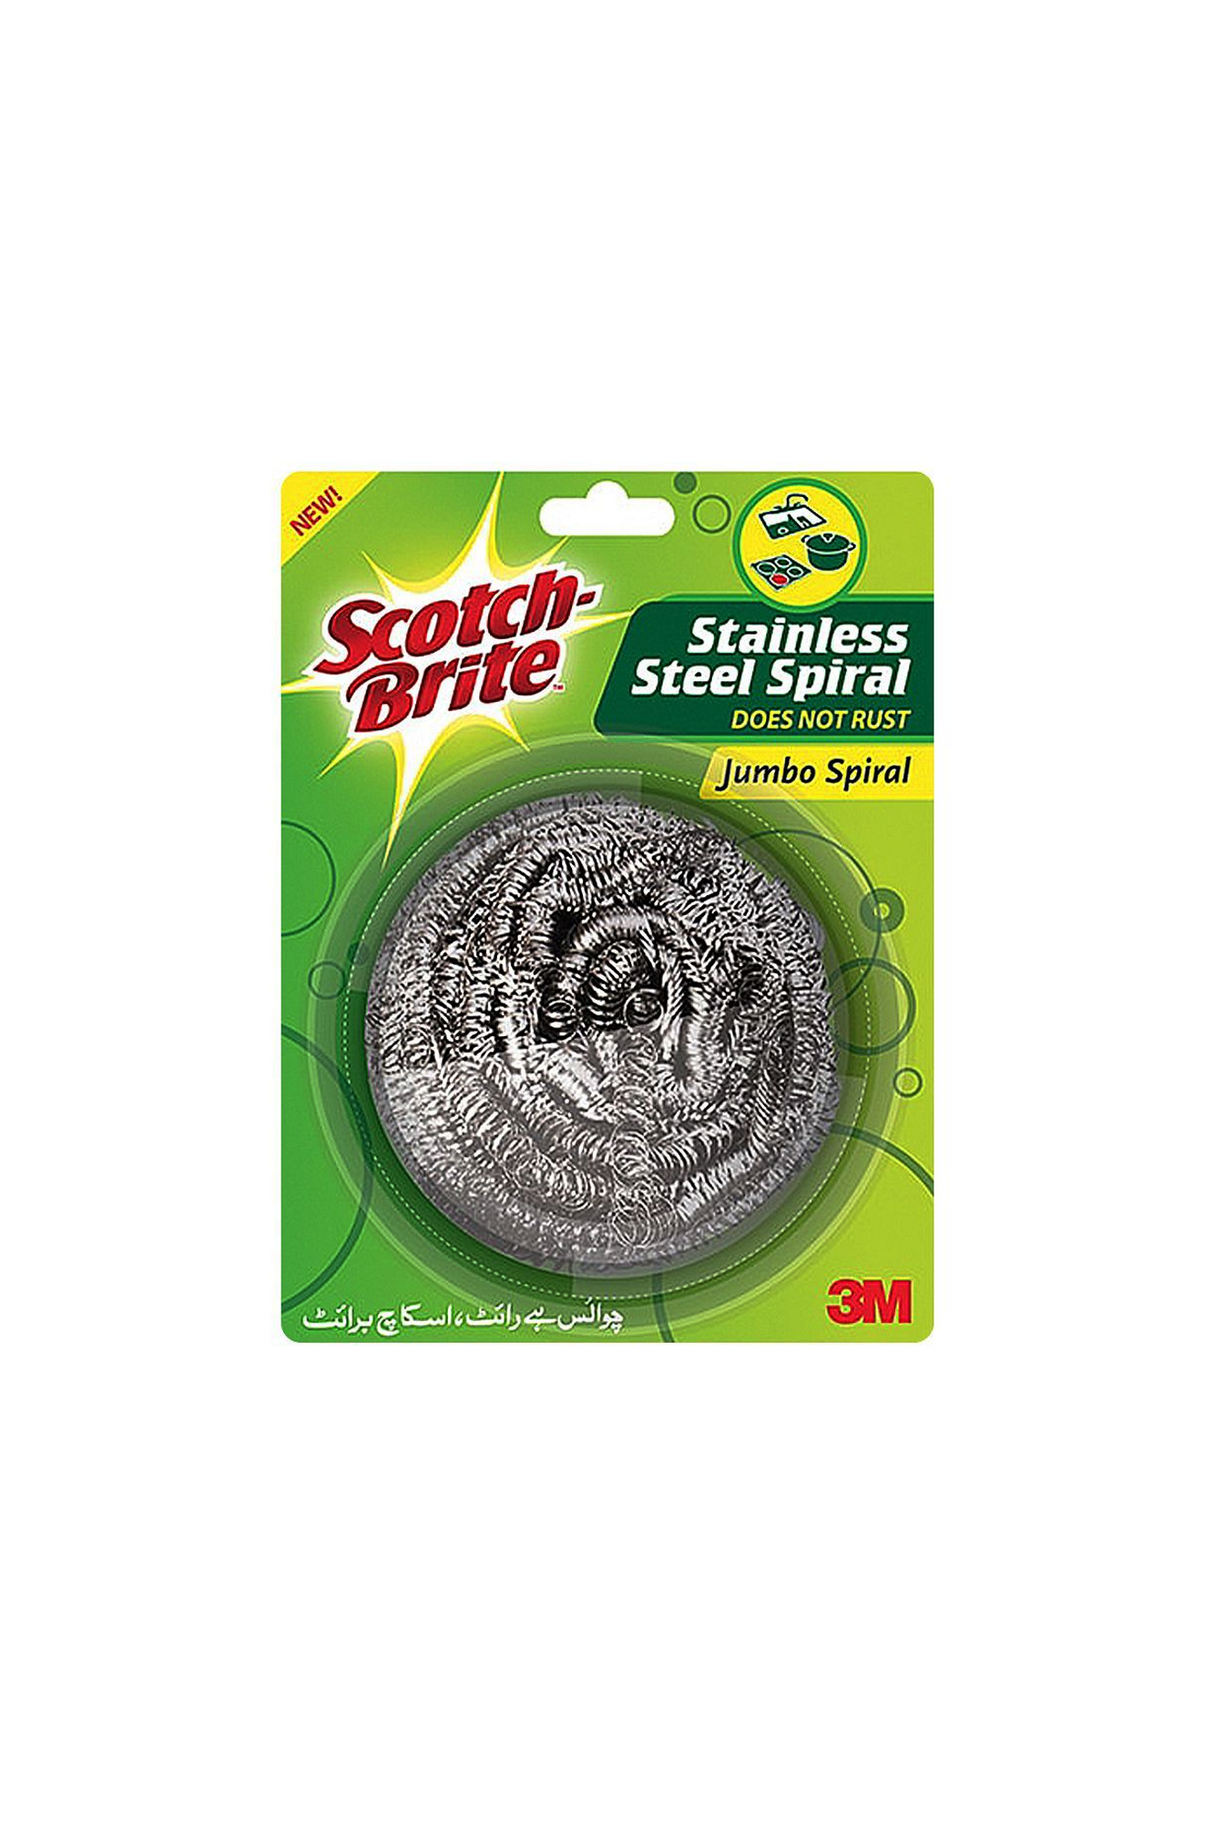 scotch brite jumbo spiral steel